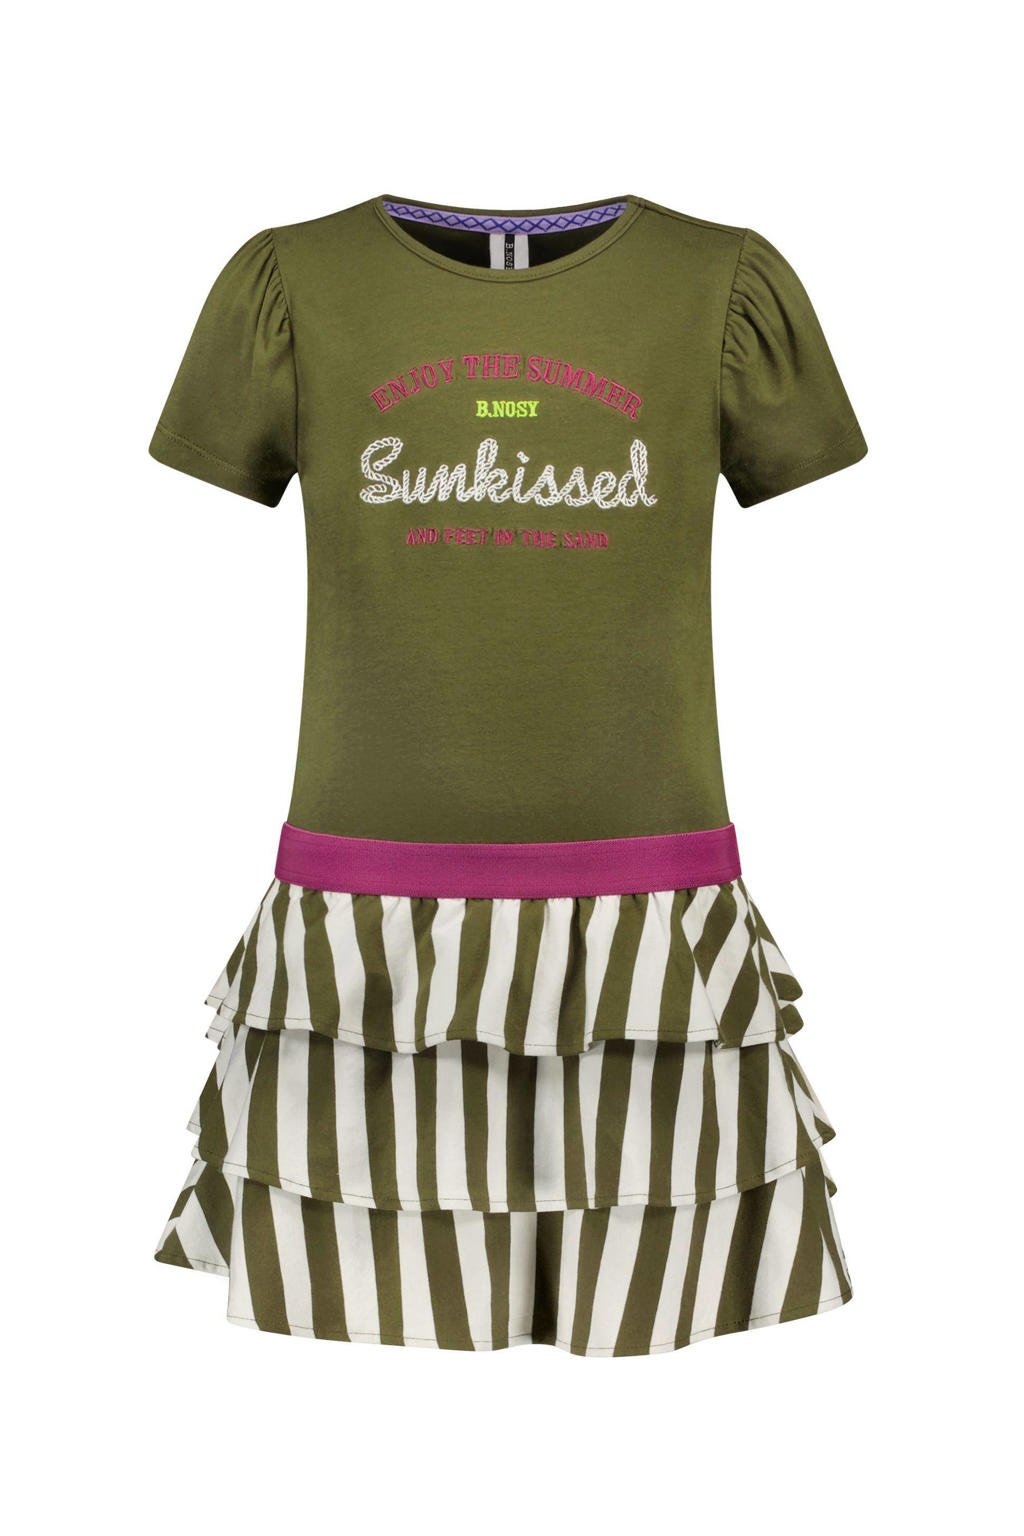 Groen, beige en paarse meisjes B.Nosy jurk B.Dazzeling van stretchkatoen met all over print, korte mouwen en ronde hals